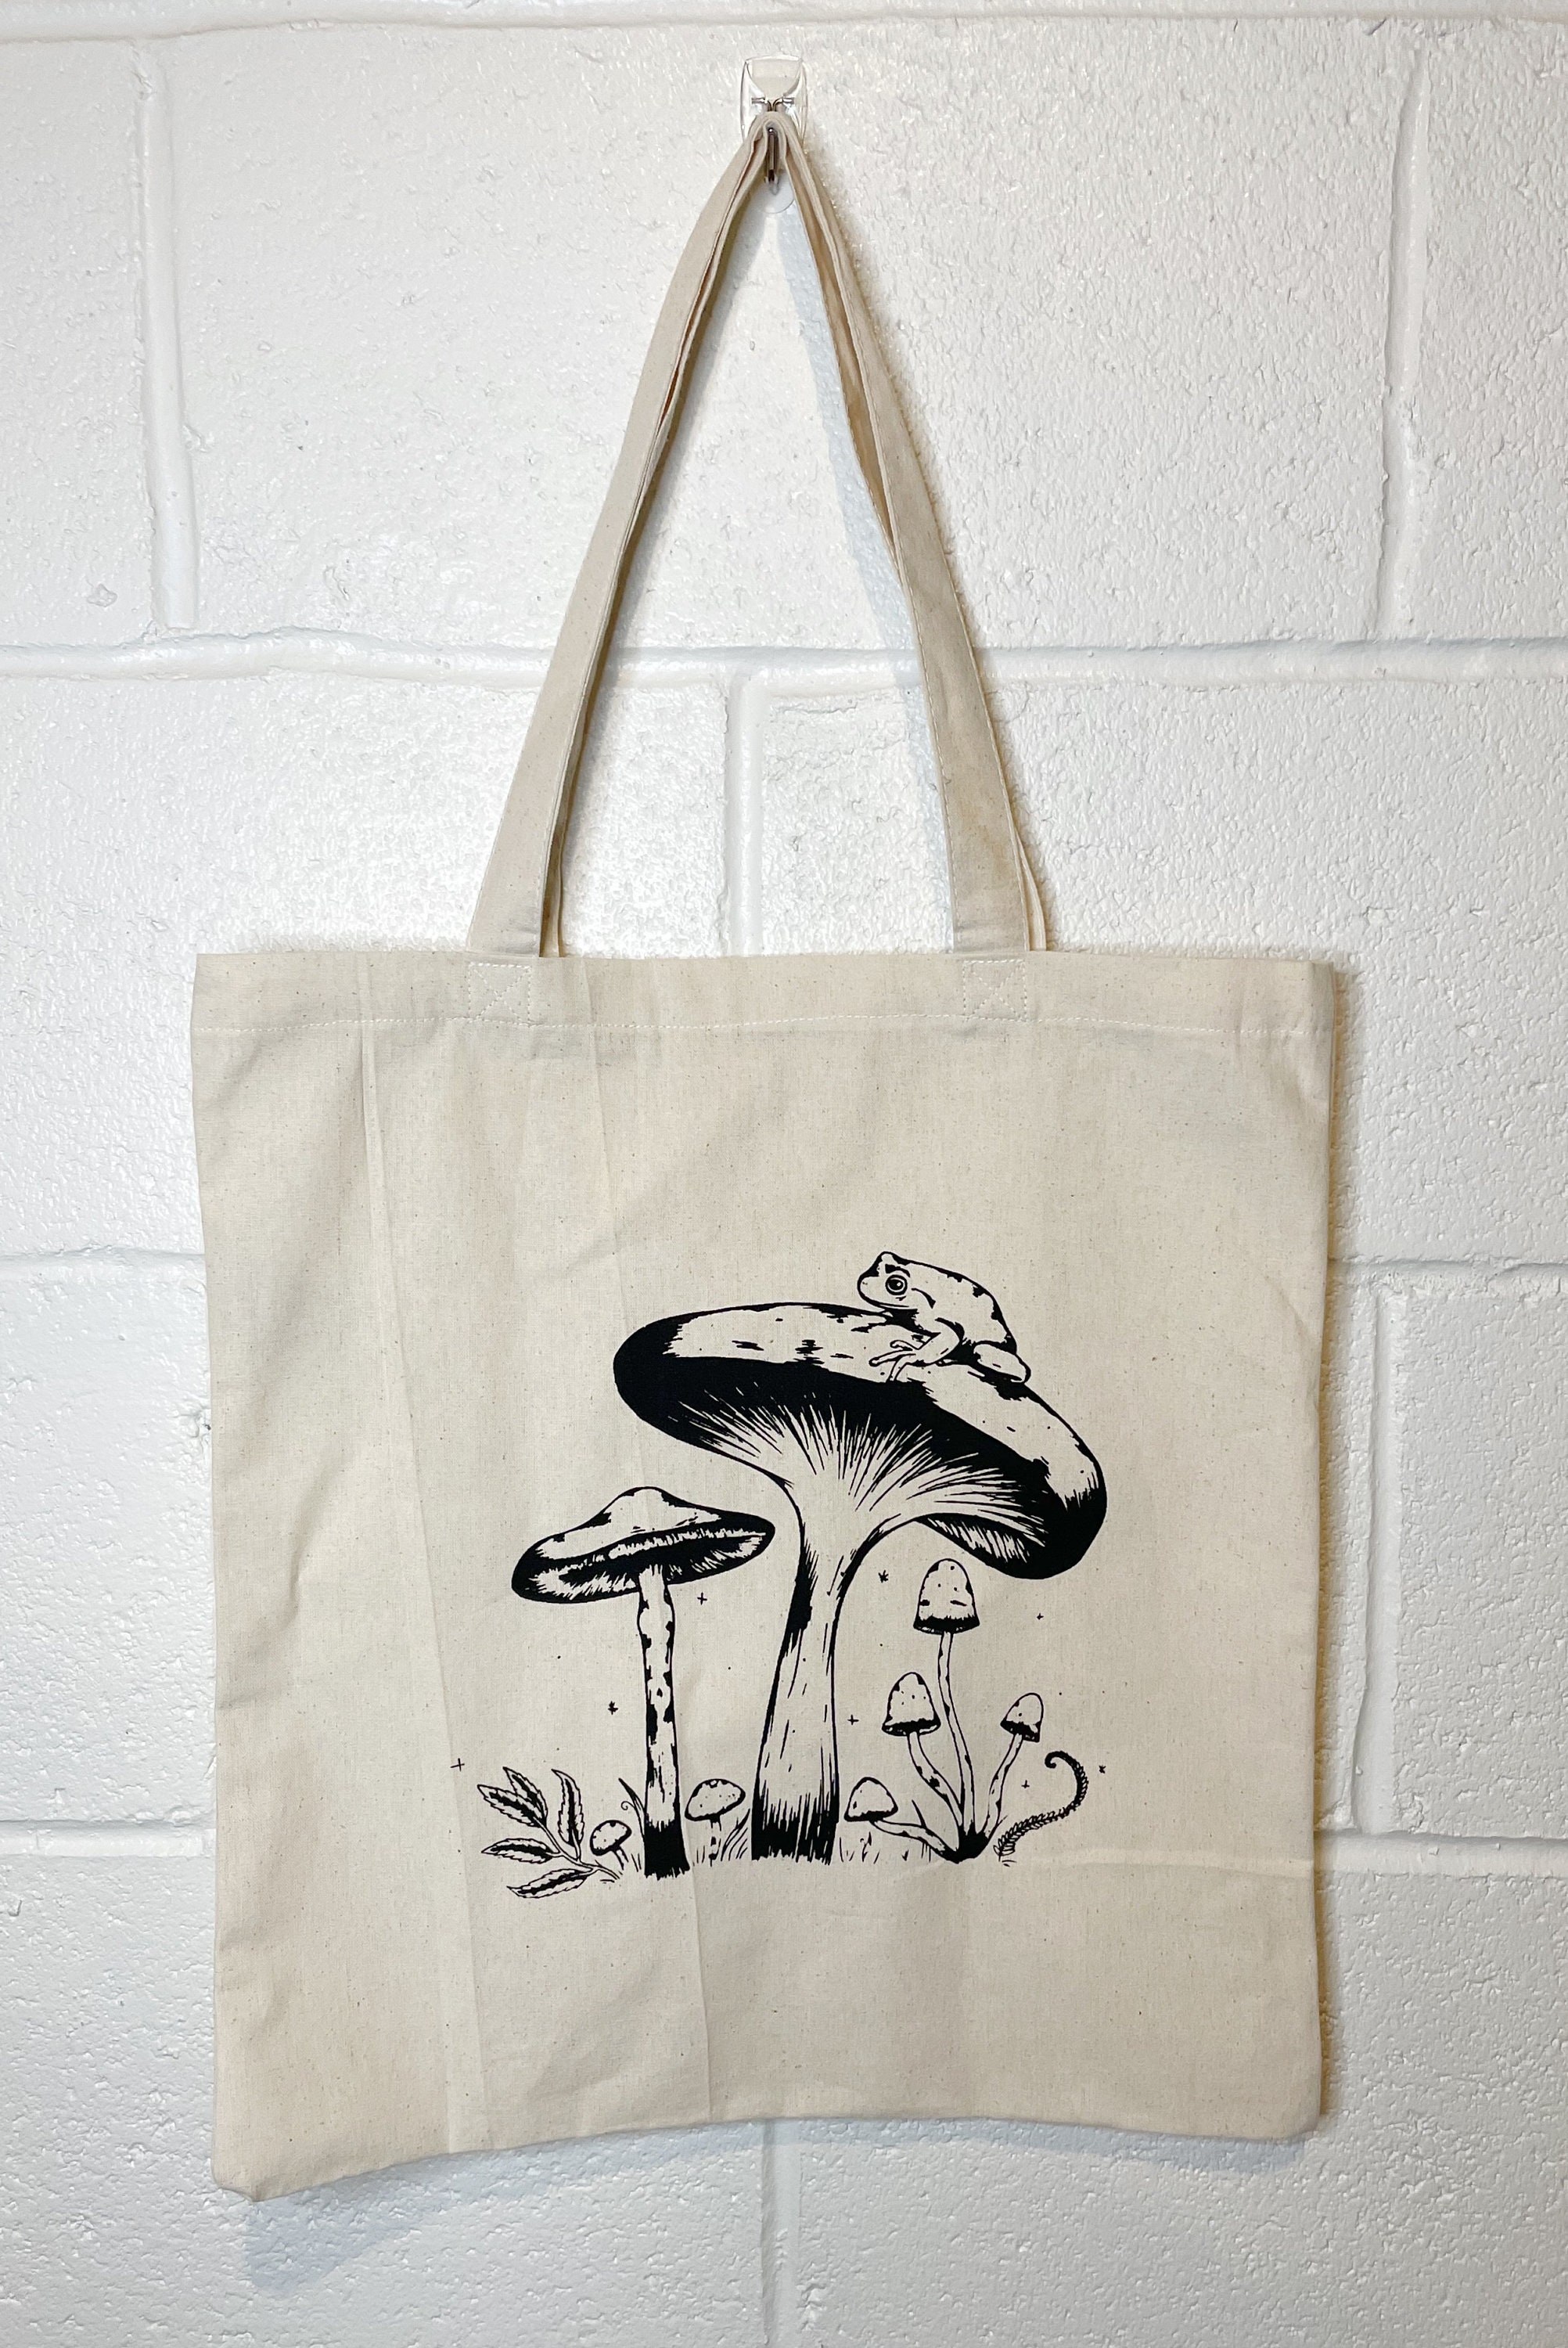 Mushroom Tote Bag Screen Printed Tote Bag | Etsy